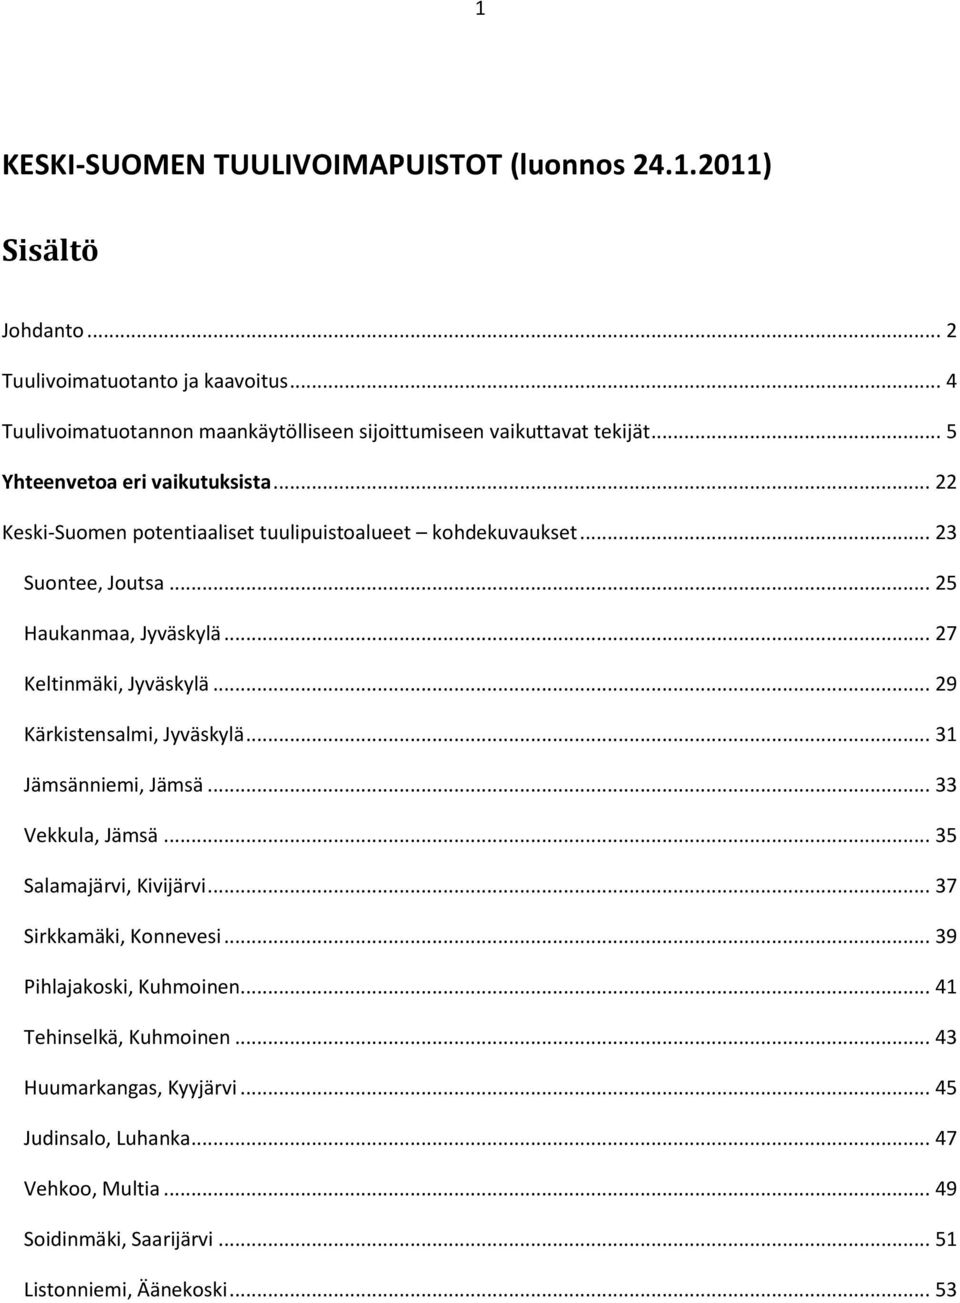 .. 22 Keski-Suomen potentiaaliset tuulipuistoalueet kohdekuvaukset... 23 Suontee, Joutsa... 25 Haukanmaa, Jyväskylä... 27 Keltinmäki, Jyväskylä... 29 Kärkistensalmi, Jyväskylä.